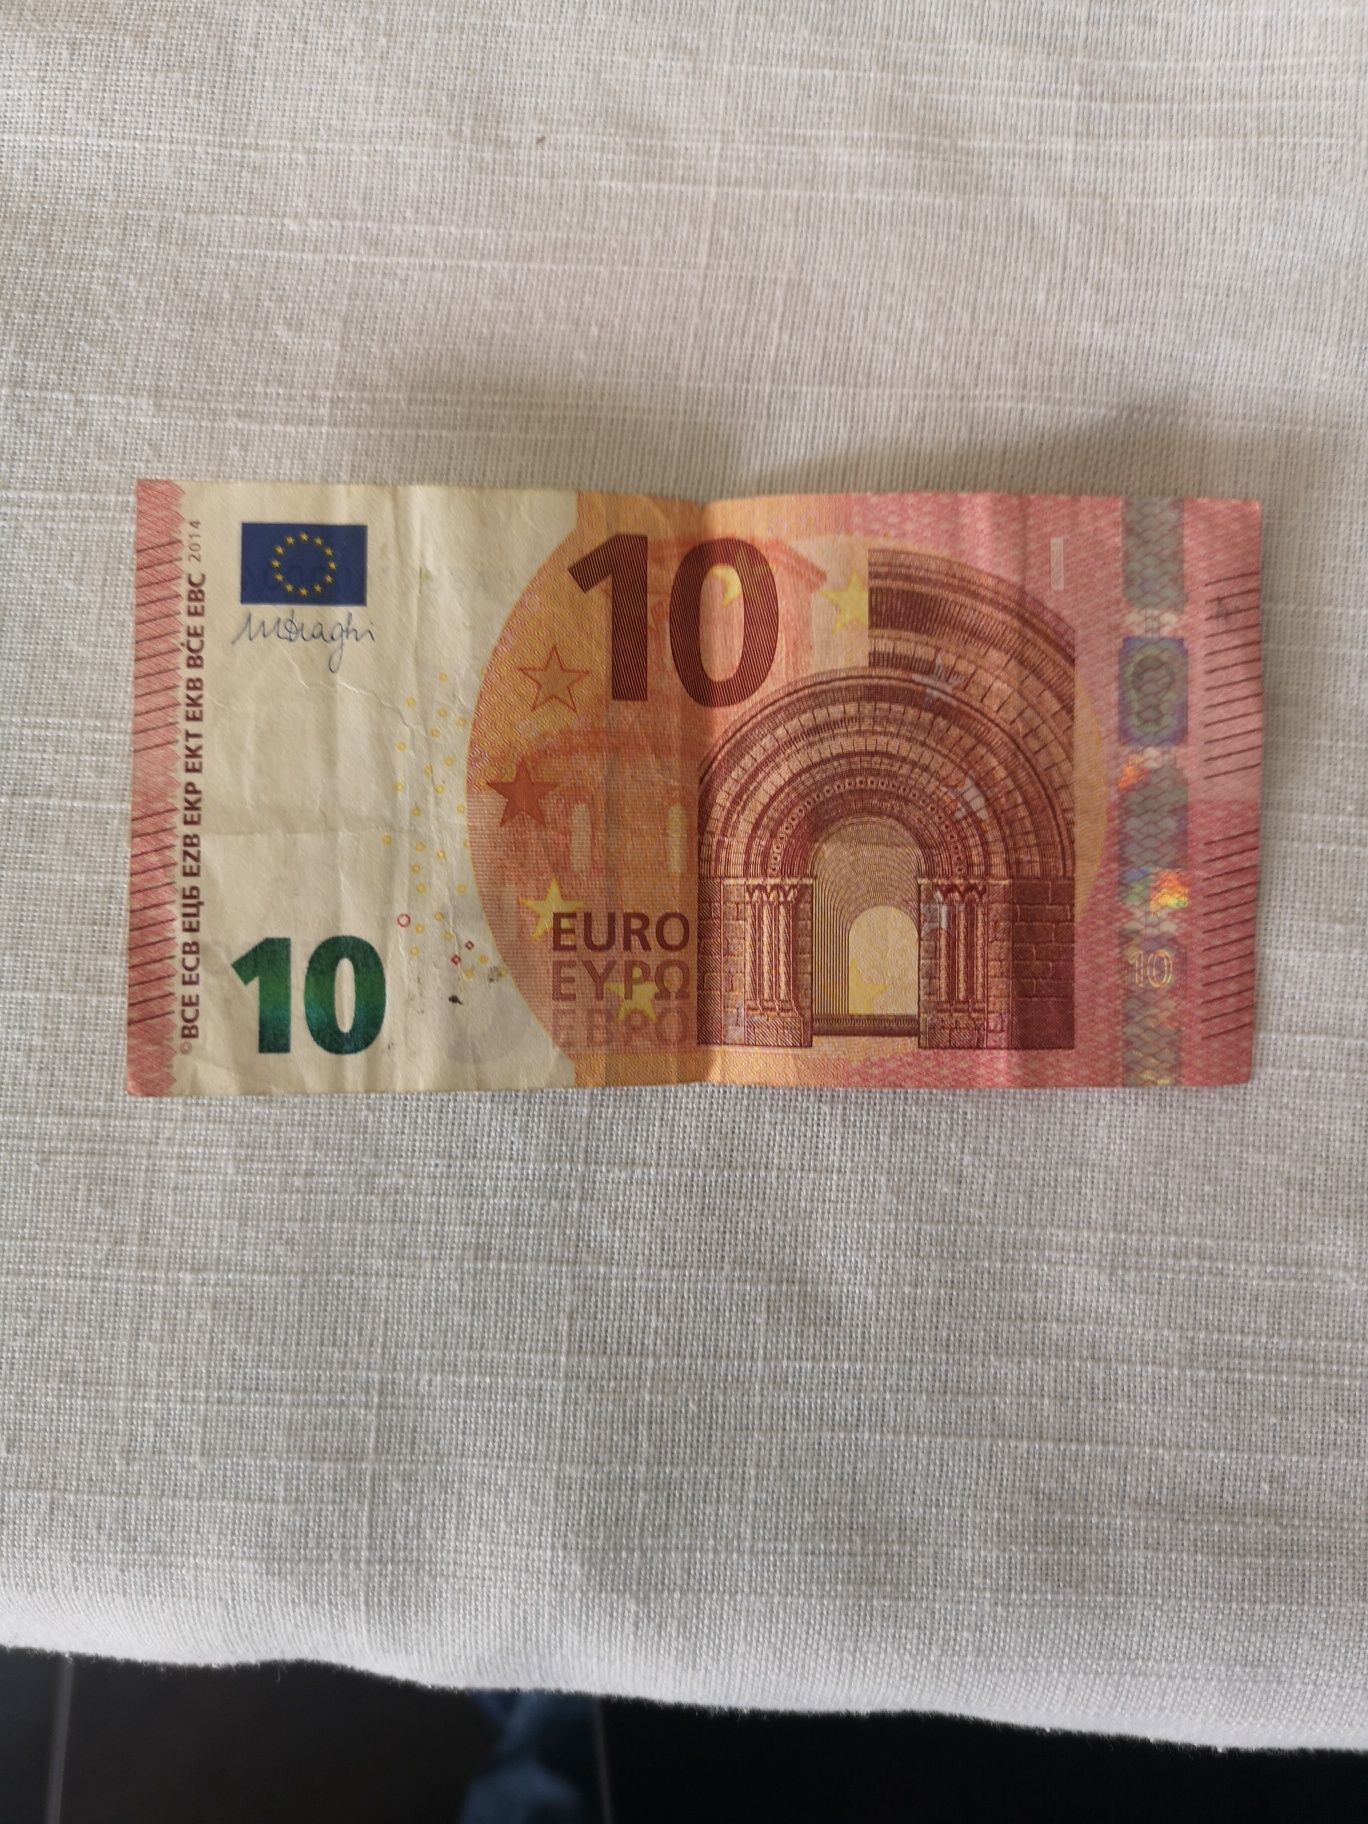 Nota capicua 10 euros